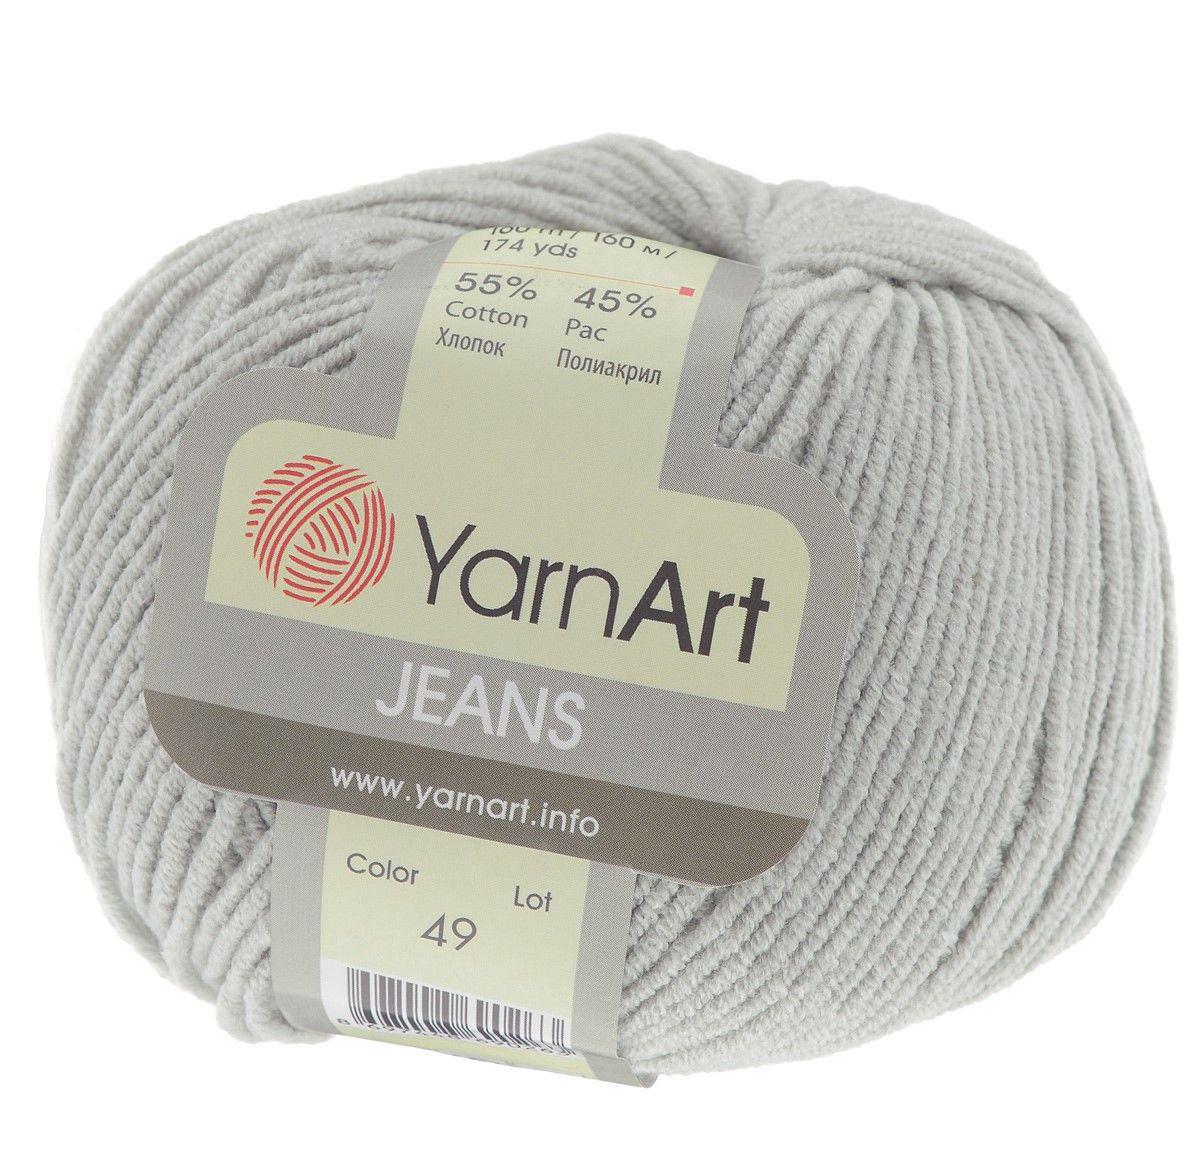 YarnArt Jeans цвет №49 серый